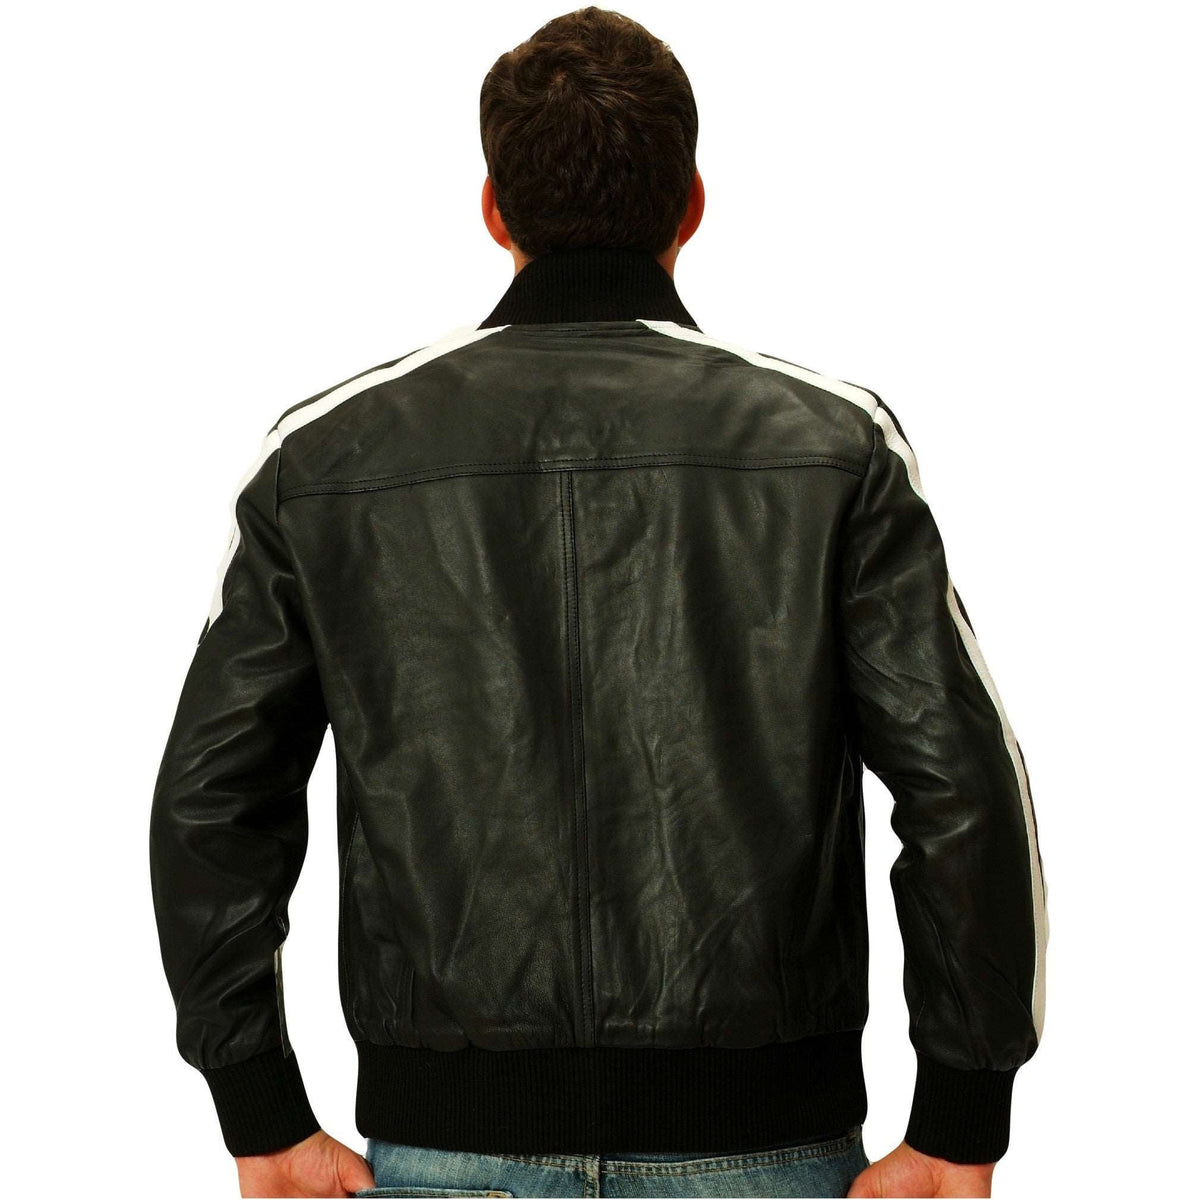 Mens black leather track jacket back